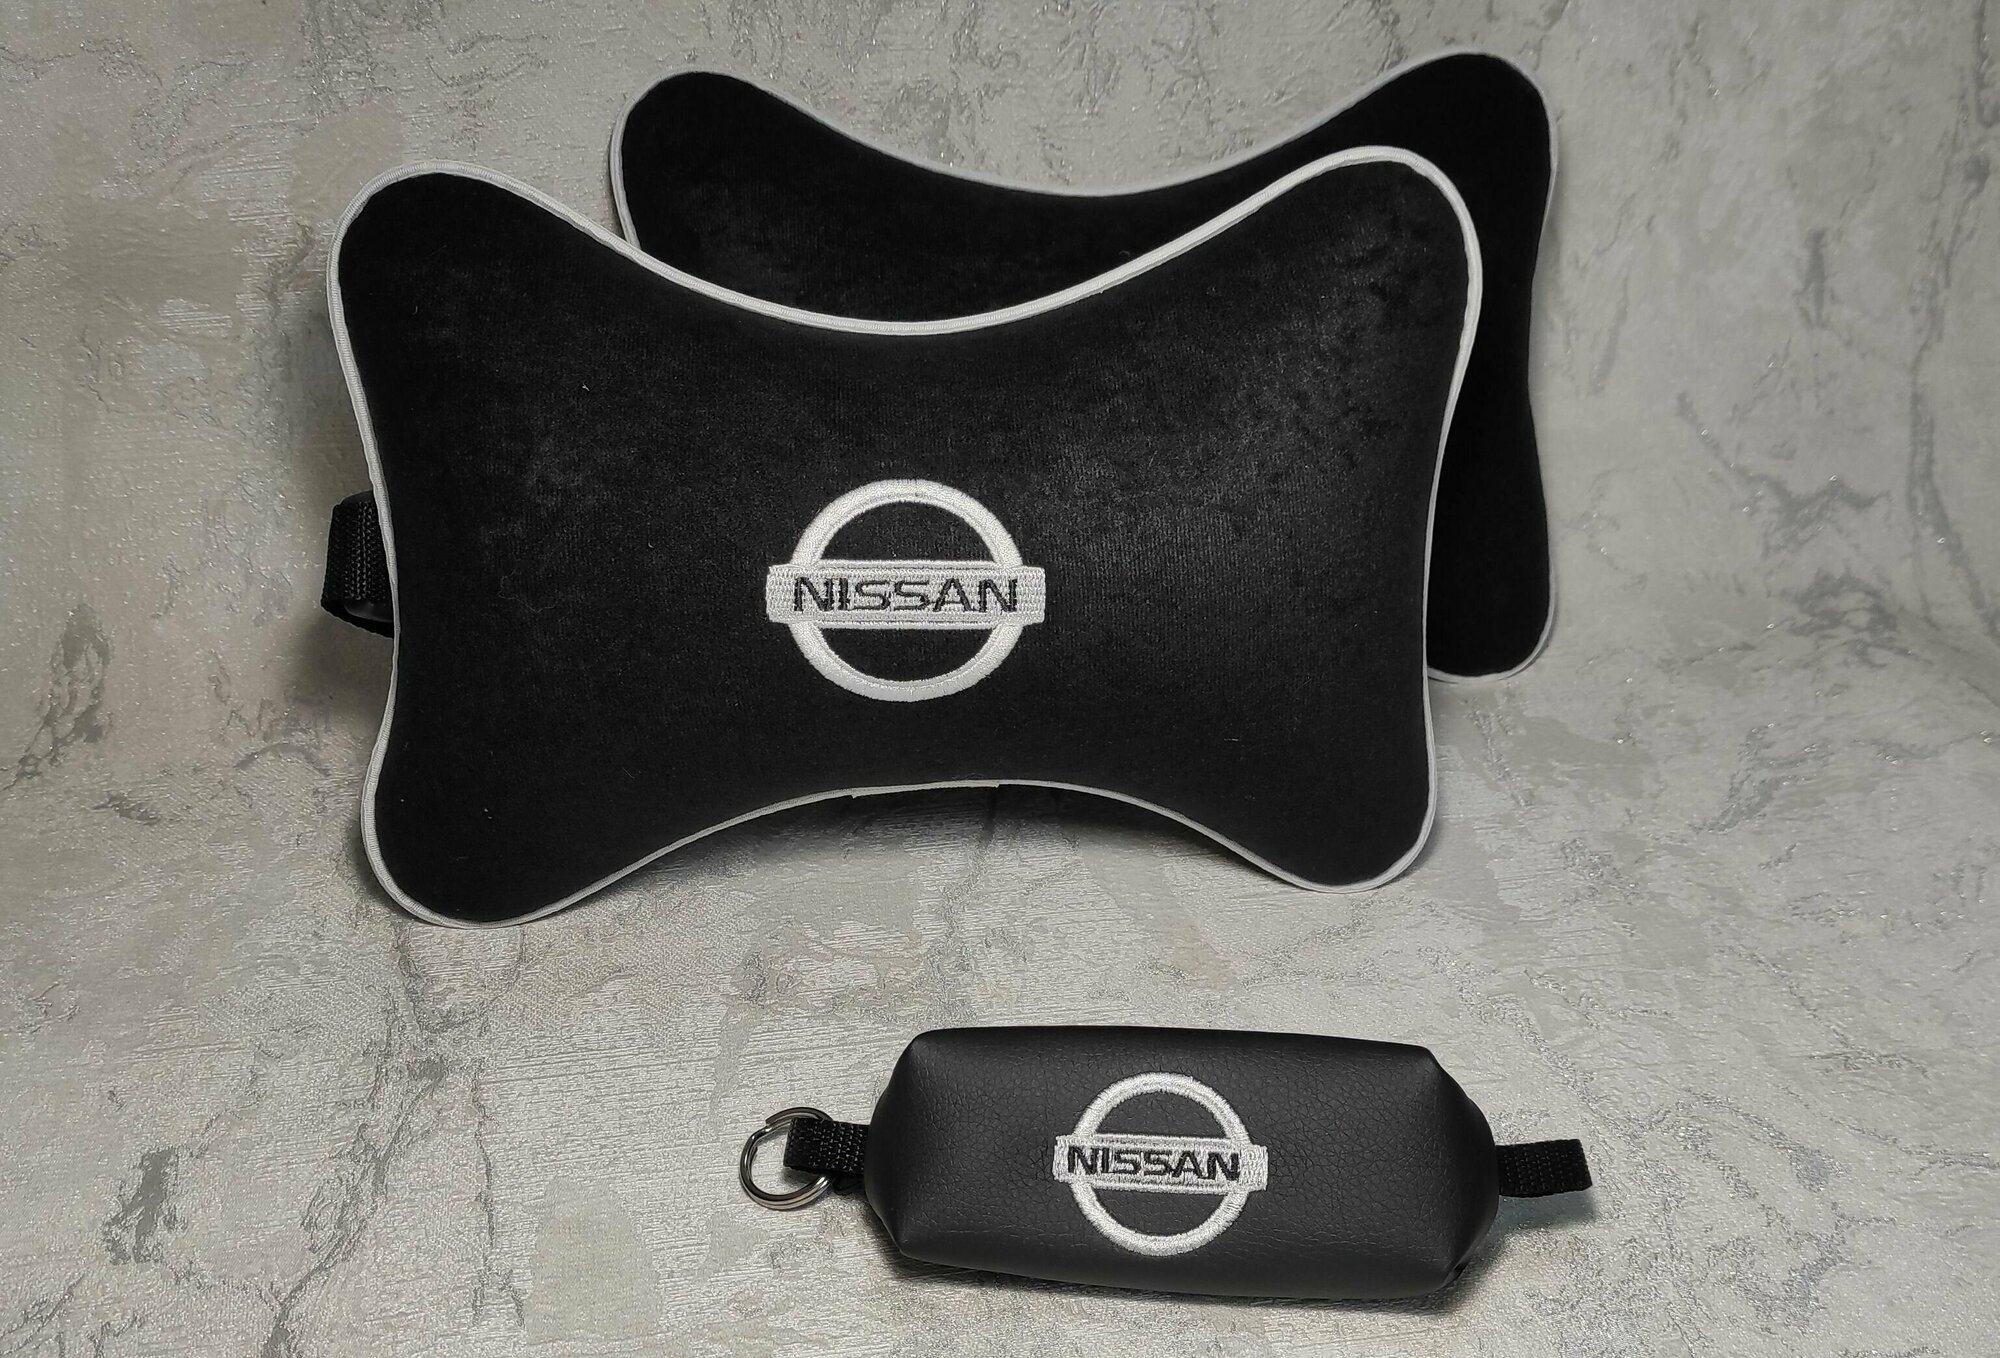 Подарочный набор: подушка на подголовник из велюра и ключница с логотипом NISSAN комплект 3 предмета